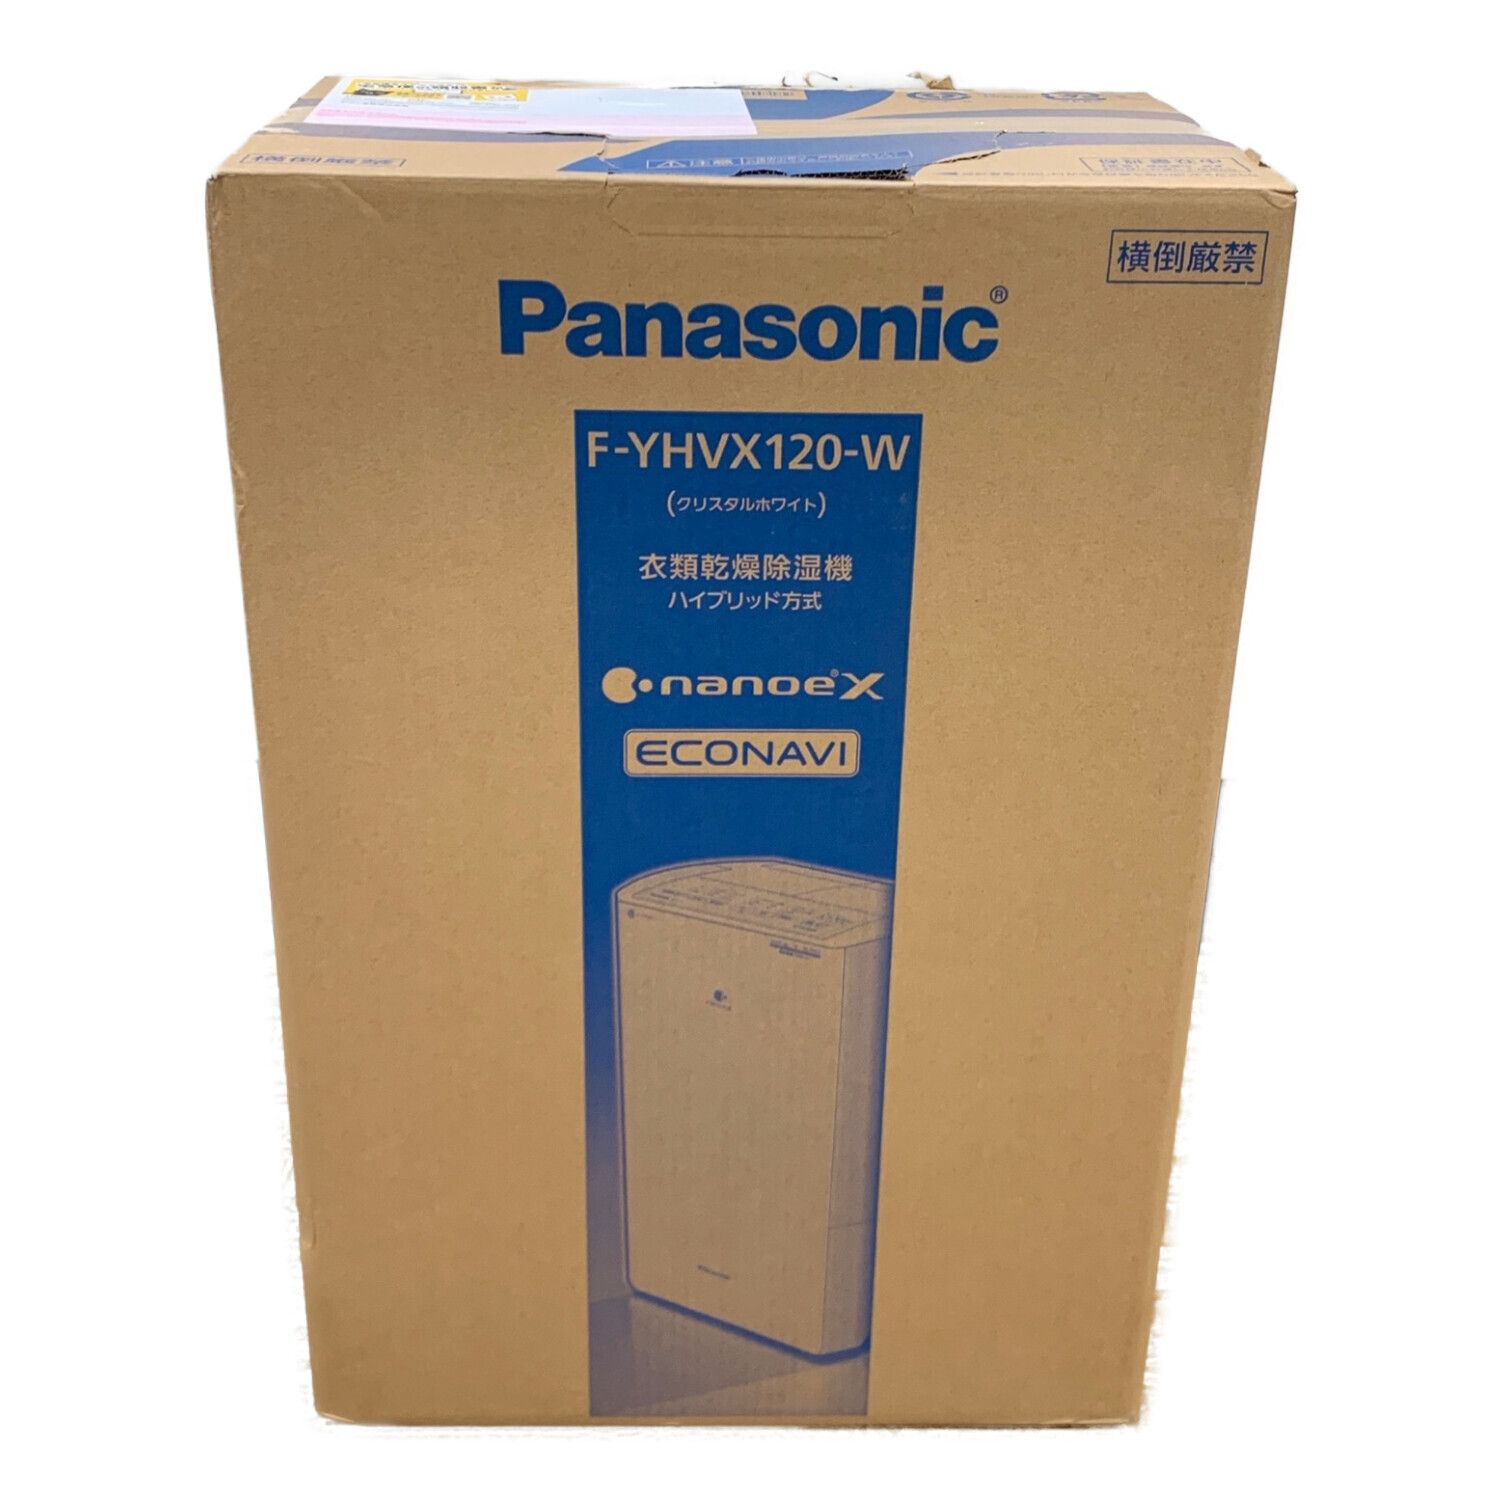 話題の行列 Panasonic F-YHVX120-W 衣類乾燥除湿機 ハイブリッド方式 ...